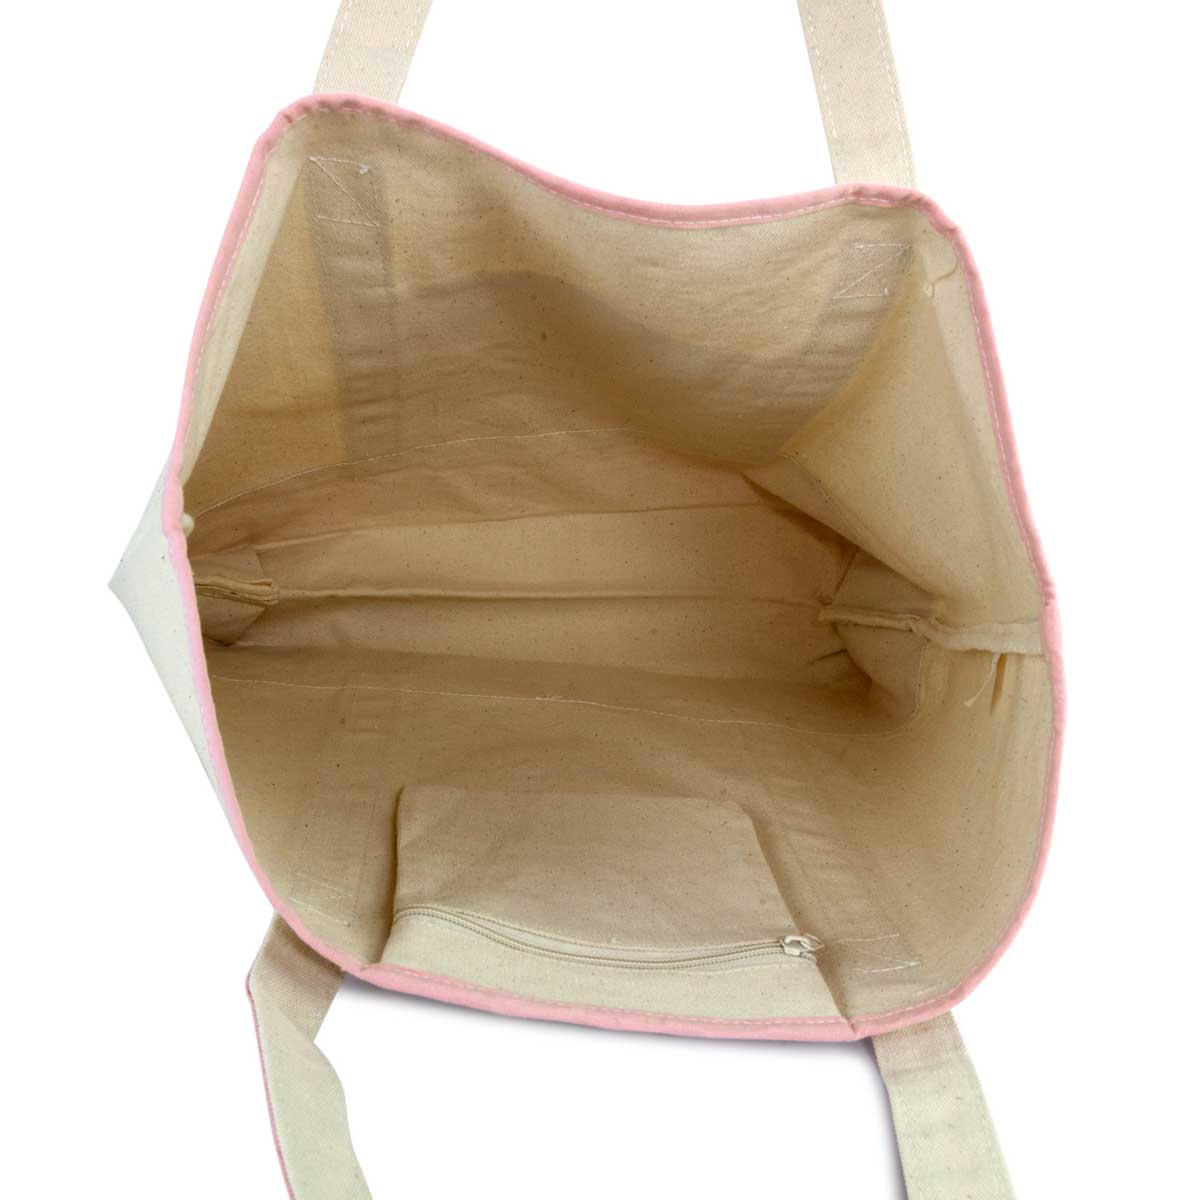 Dalix Women's Cotton Canvas Tote Bag Large Shoulder Bags Pink Monogram A-Z S